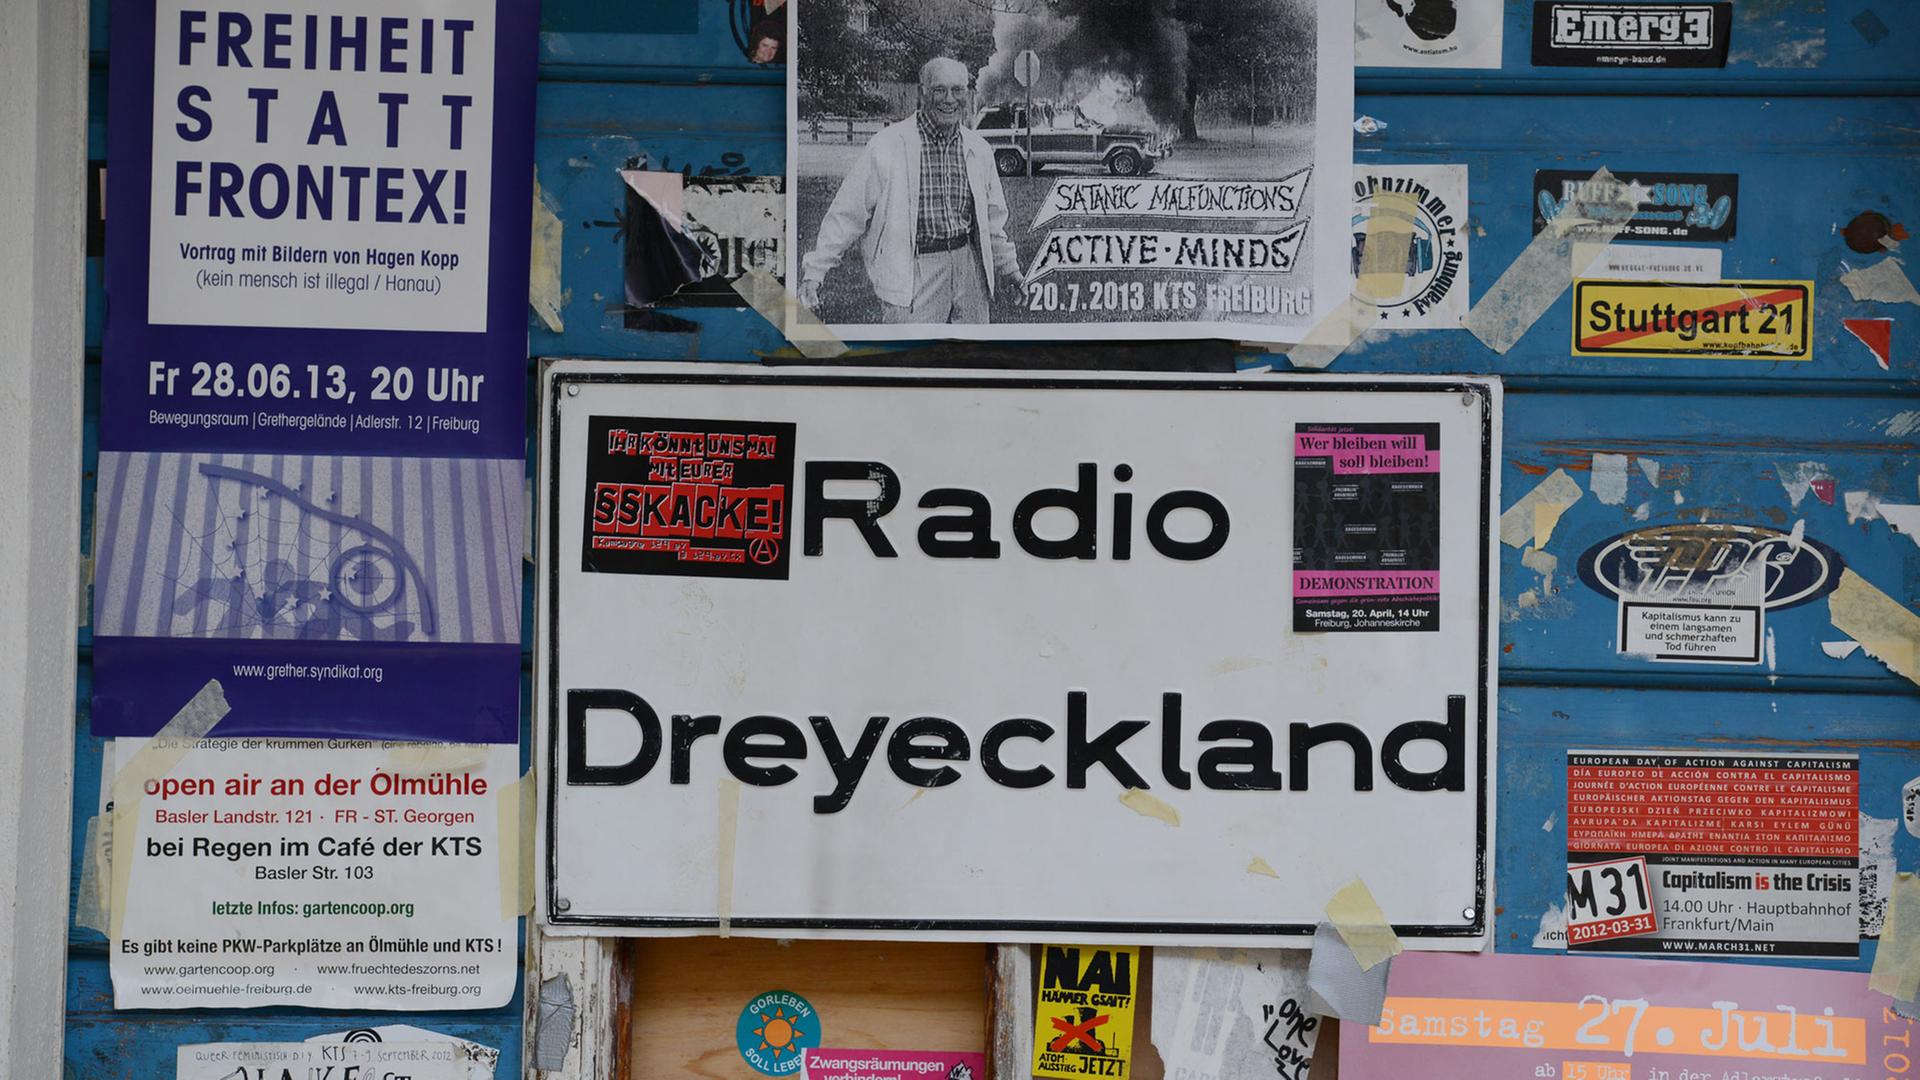 Das Logo von "Radio Dreyeckland" ist in Freiburg (Baden-Württemberg) an einer Tür zu sehen. Der Sender in Freiburg, der aus der badischen und elsässischen Anti-Atomkraft-Bewegung der 1970er Jahre entstanden ist, ist das älteste freie Radio Deutschlands. Er funkte in den ersten elf Jahren illegal als Piratensender. Vor 25 Jahren, im Juli 1988, erhielt er eine Sendelizenz. Er wurde damit als erstes freie Radio in Deutschland legalisiert.